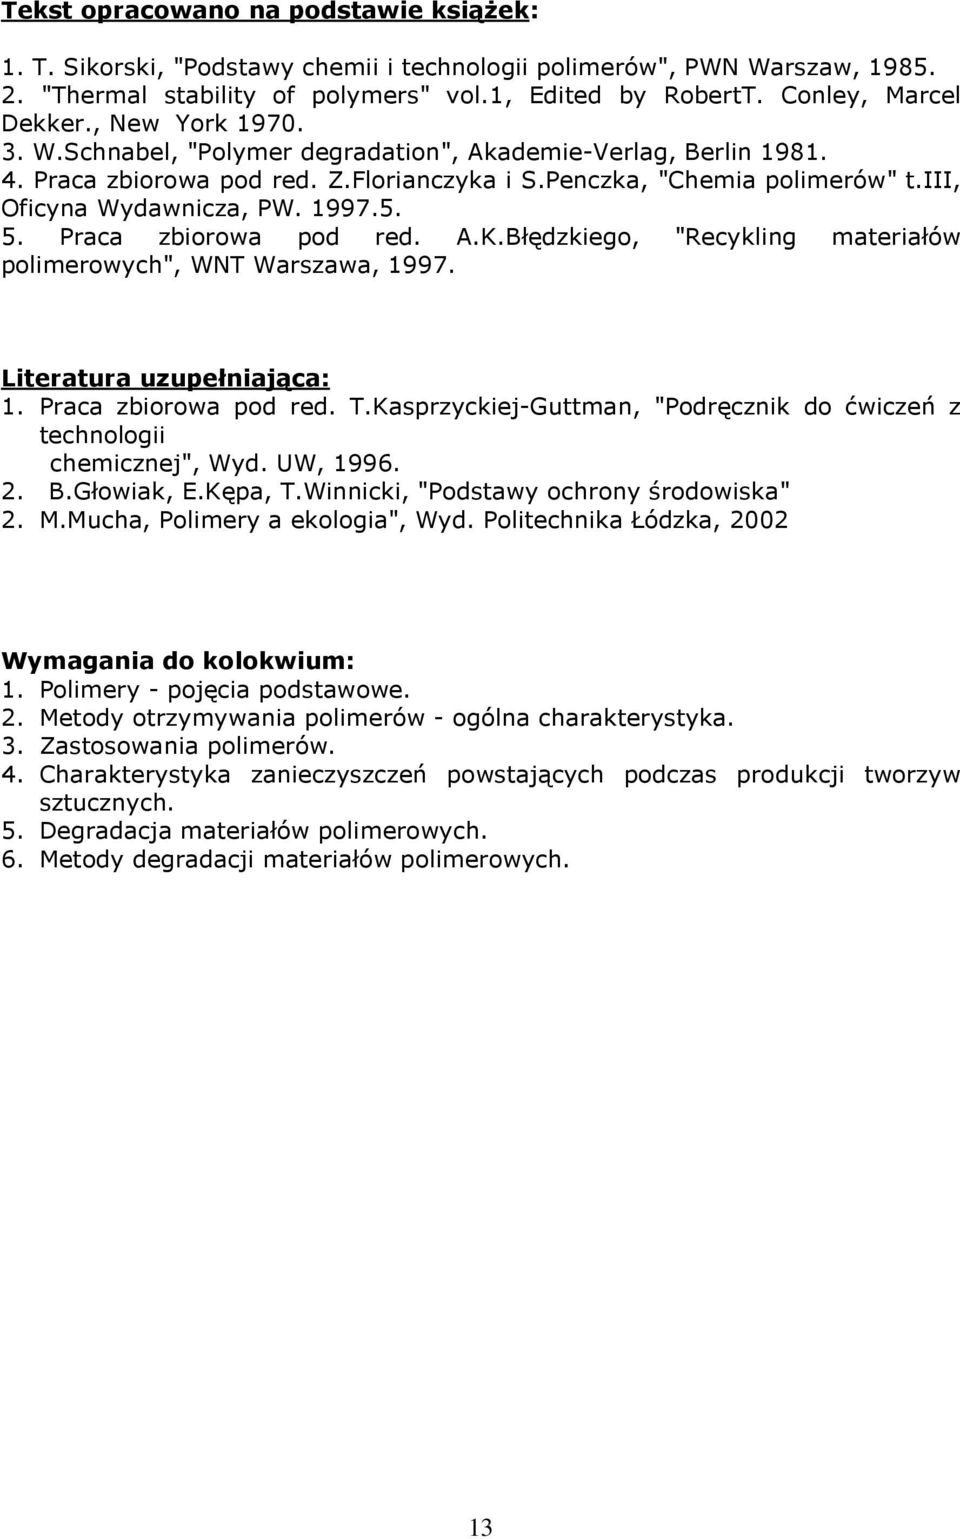 Praca zbiorowa pod red. A.K.Błędzkiego, "Recykling materiałów polimerowych", WNT Warszawa, 1997. Literatura uzupełniająca: 1. Praca zbiorowa pod red. T.